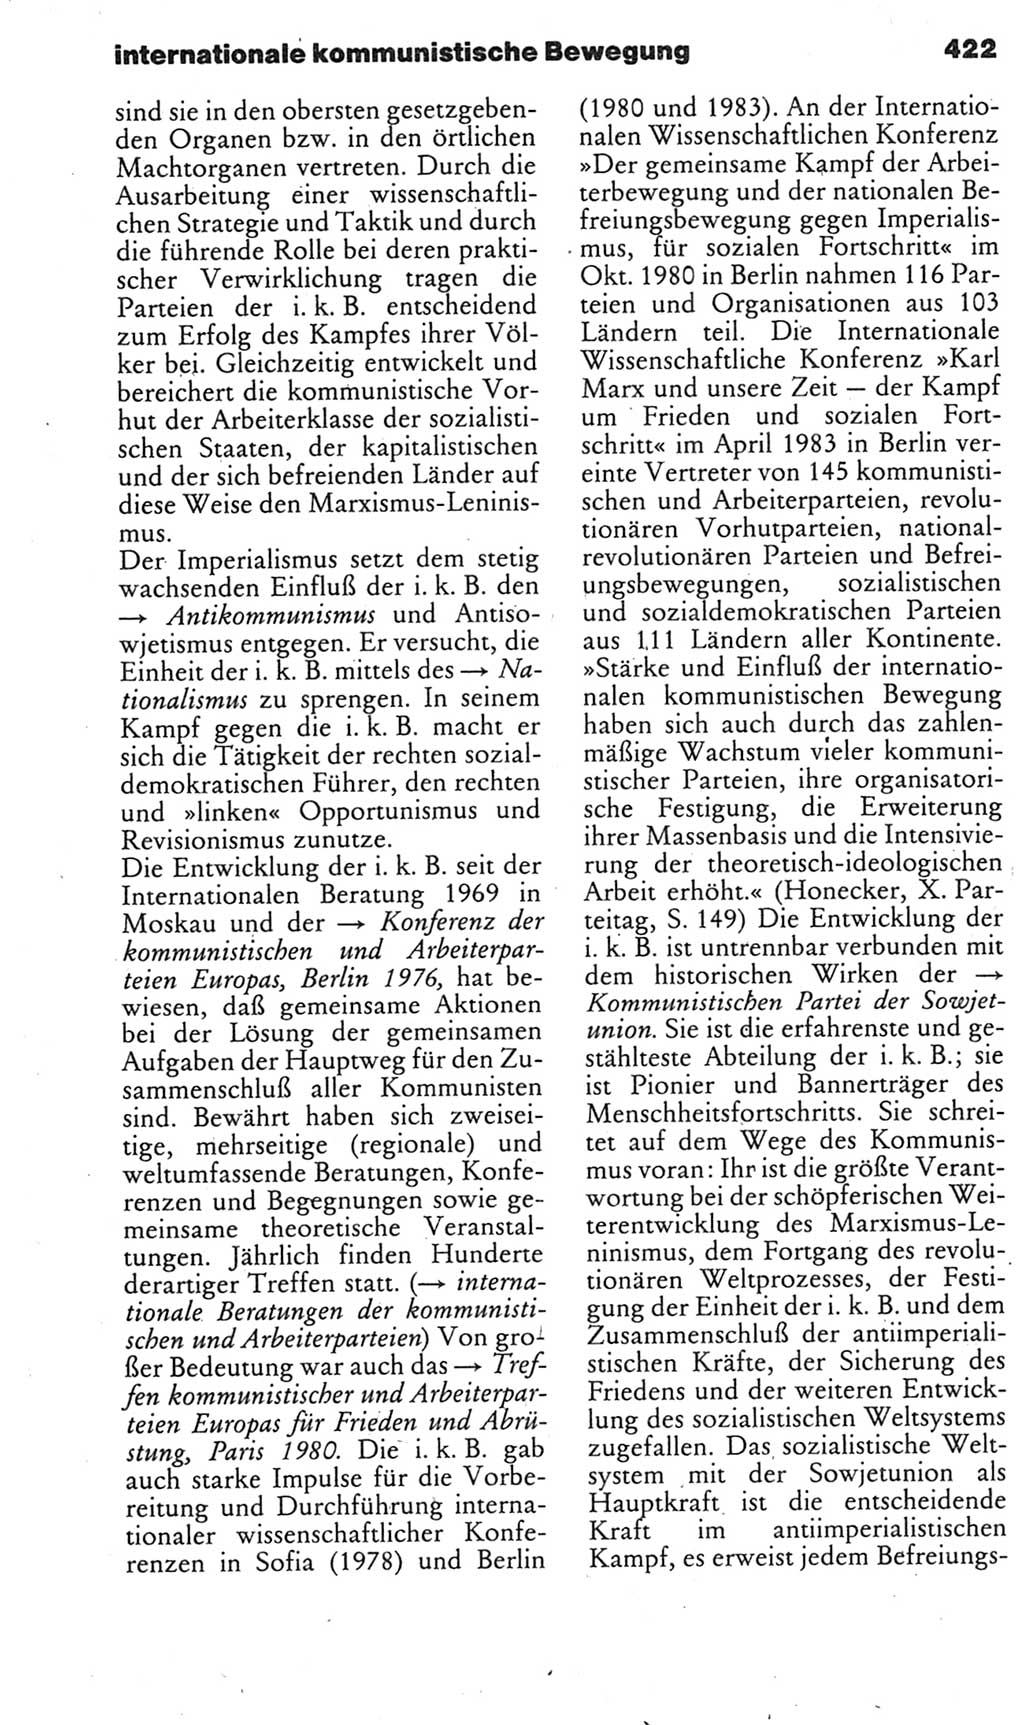 Kleines politisches Wörterbuch [Deutsche Demokratische Republik (DDR)] 1985, Seite 422 (Kl. pol. Wb. DDR 1985, S. 422)